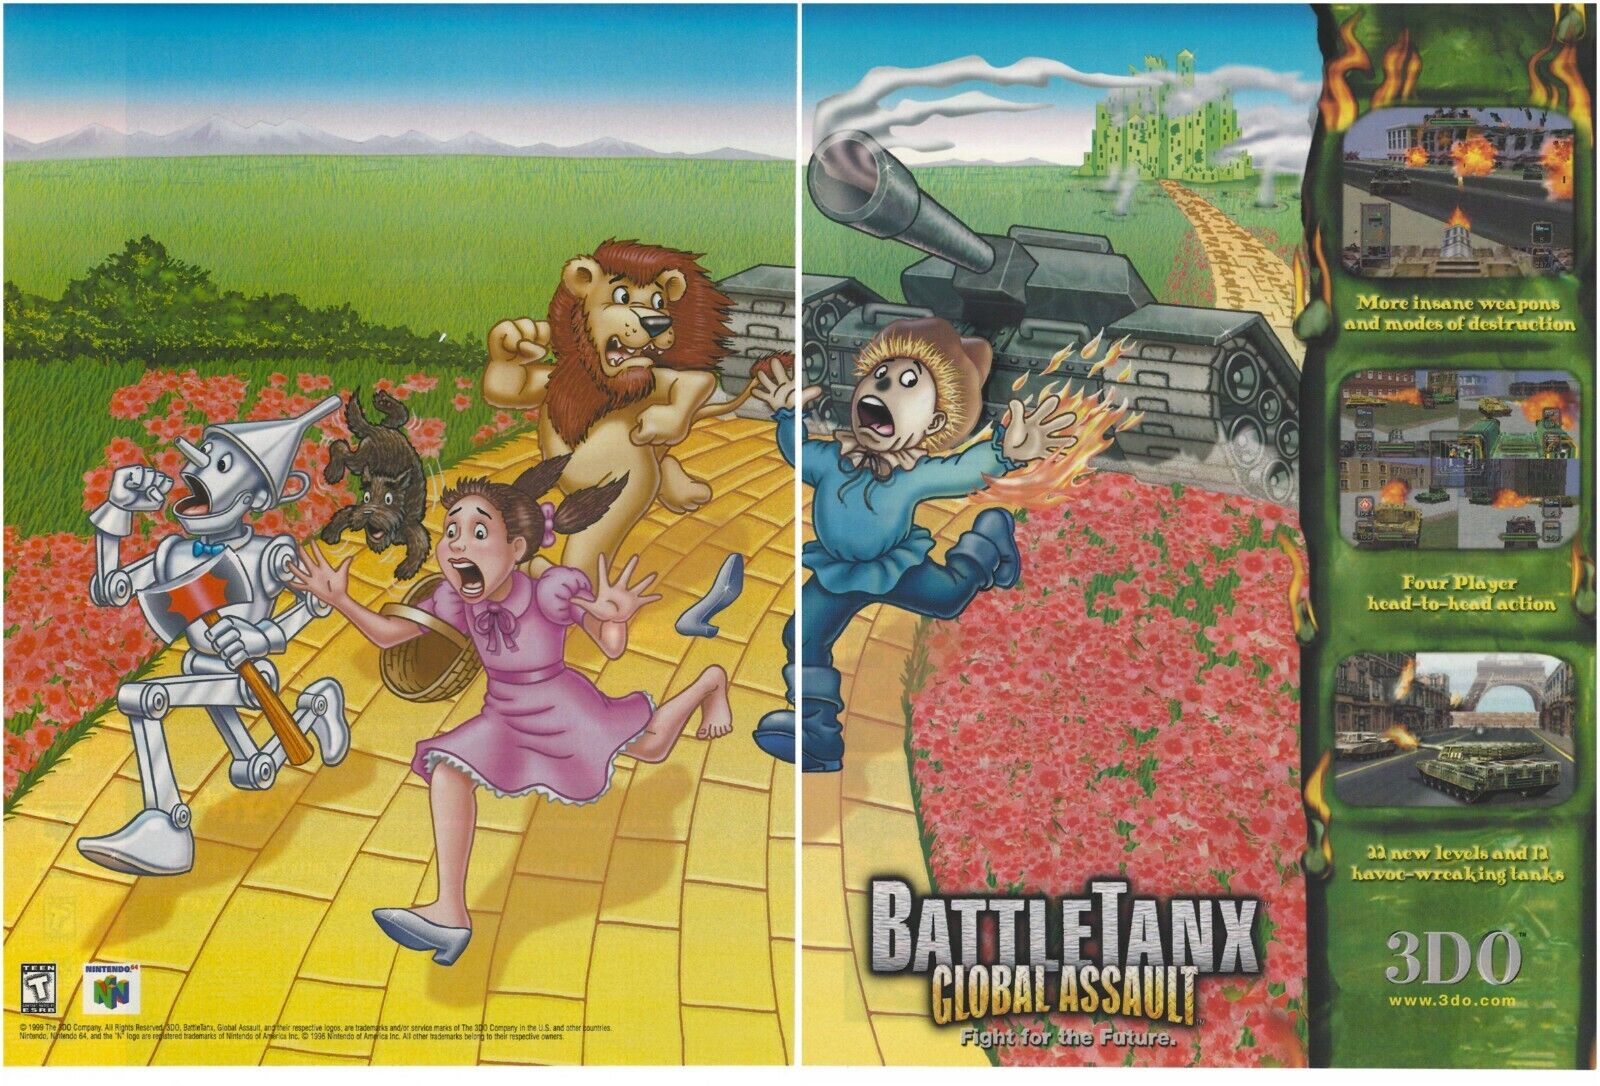 BattleTanx: Global Assault Print Ad/Poster Art N64